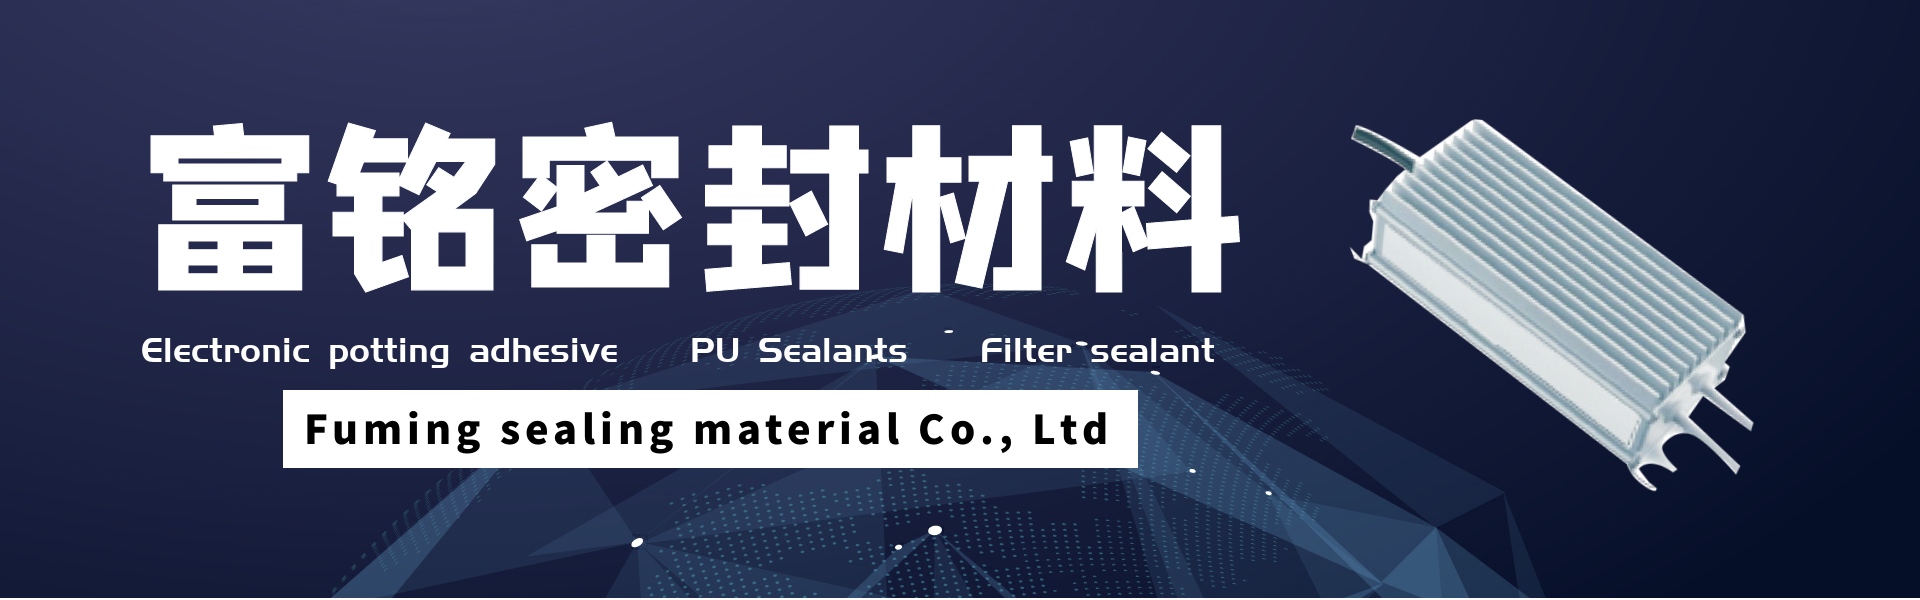 elektronischer Vergusskleber, PU-Dichtungsmassen, Filterdichtungsmassen,Dongguan fuming sealing material Co., Ltd